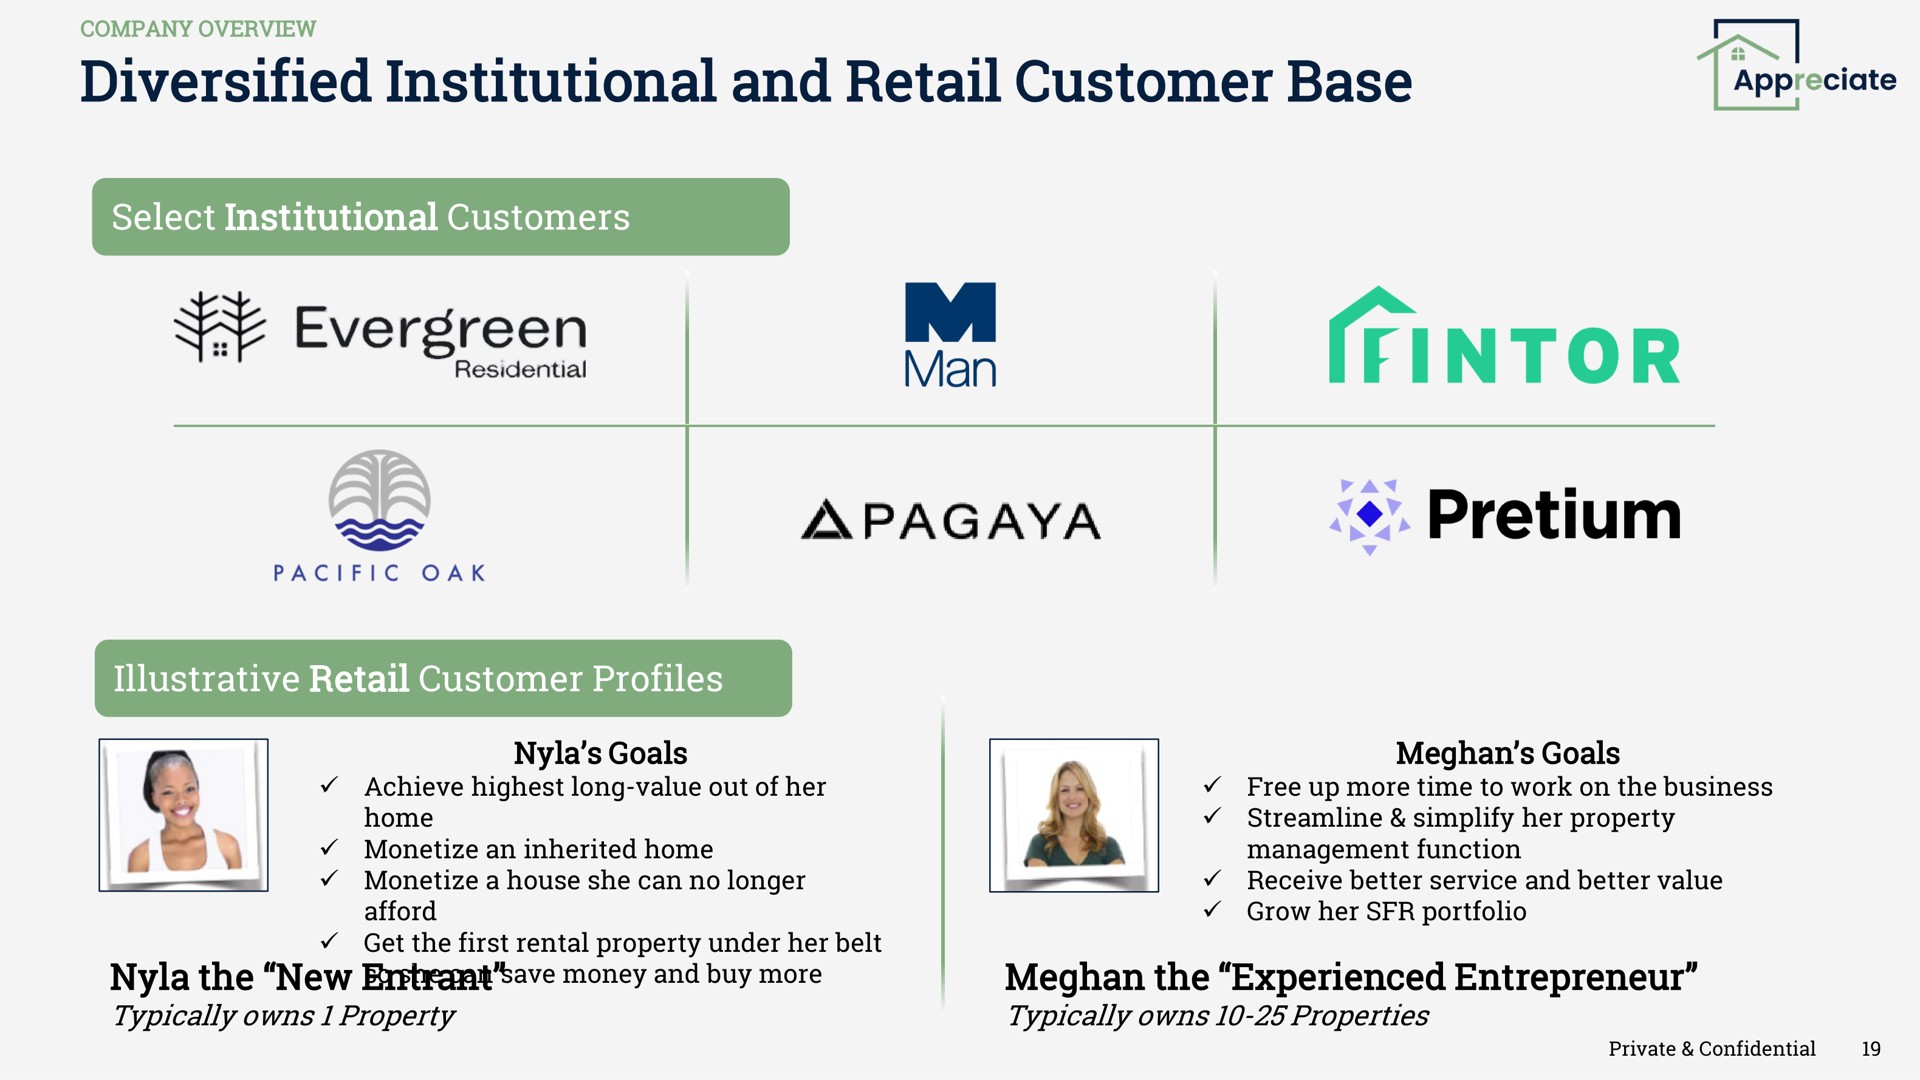 diversified institutional and retail customer base appreciate evergreen as | Appreciate